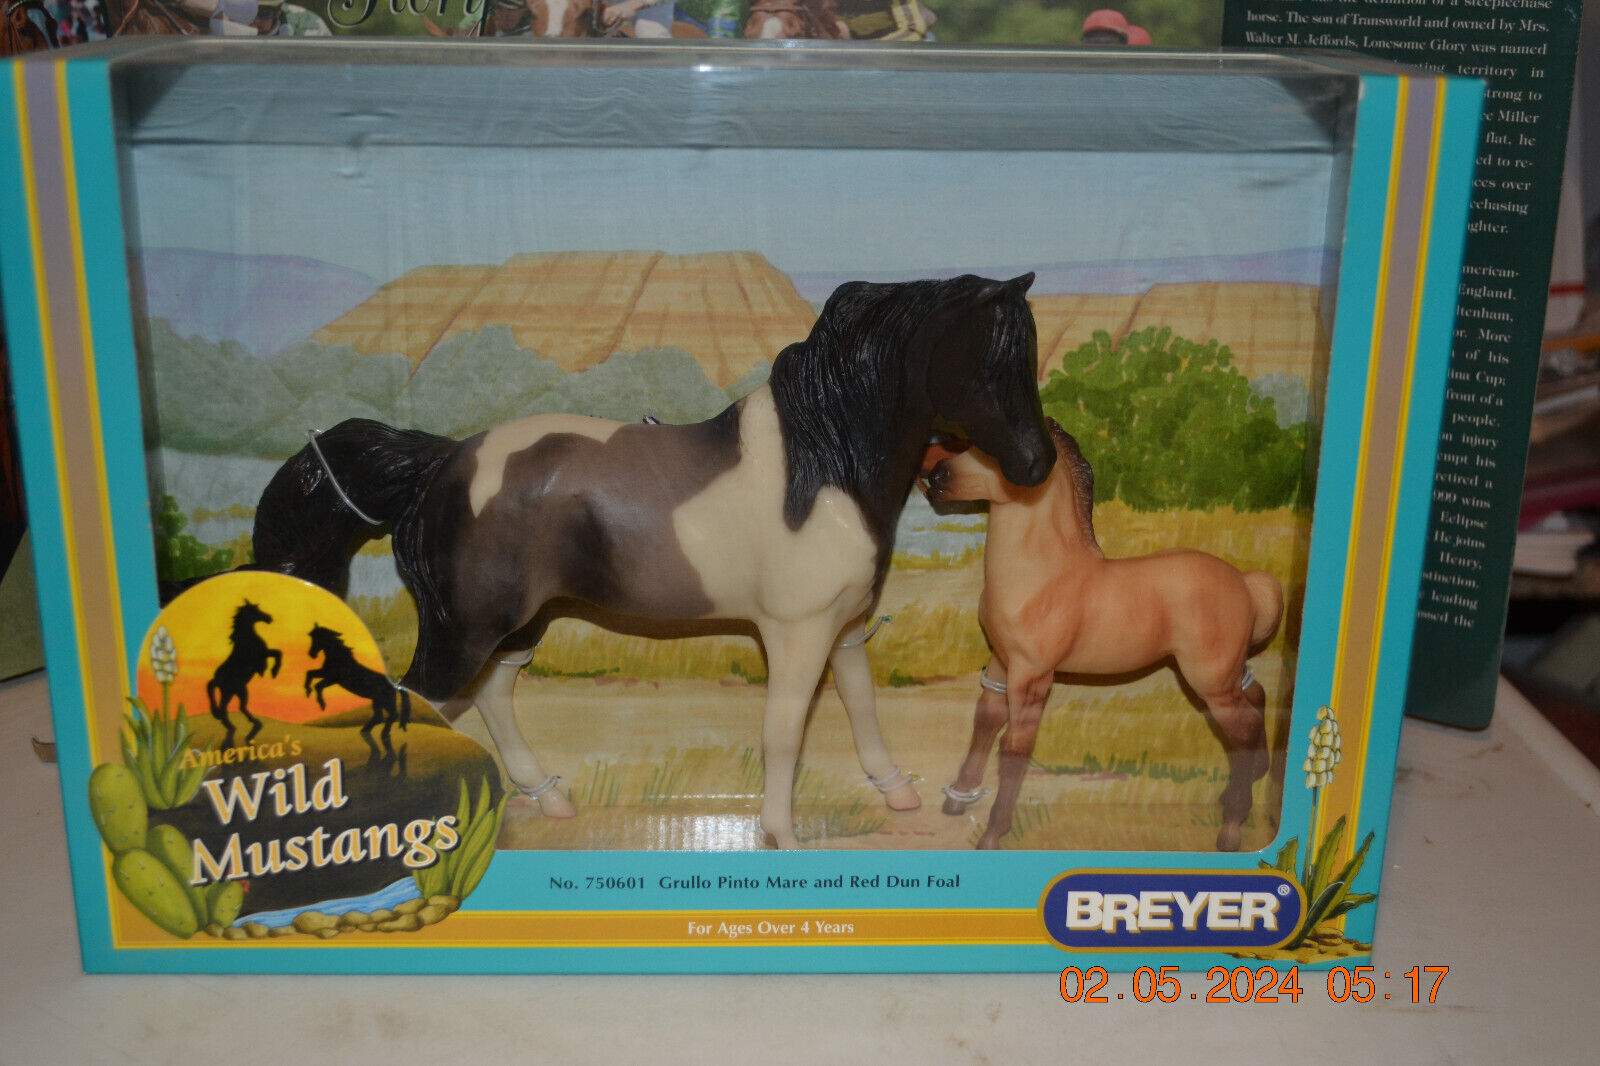 Breyer Horse Wal Mart Wild Mustangs NIB NBRB #750601 2001 variation #2